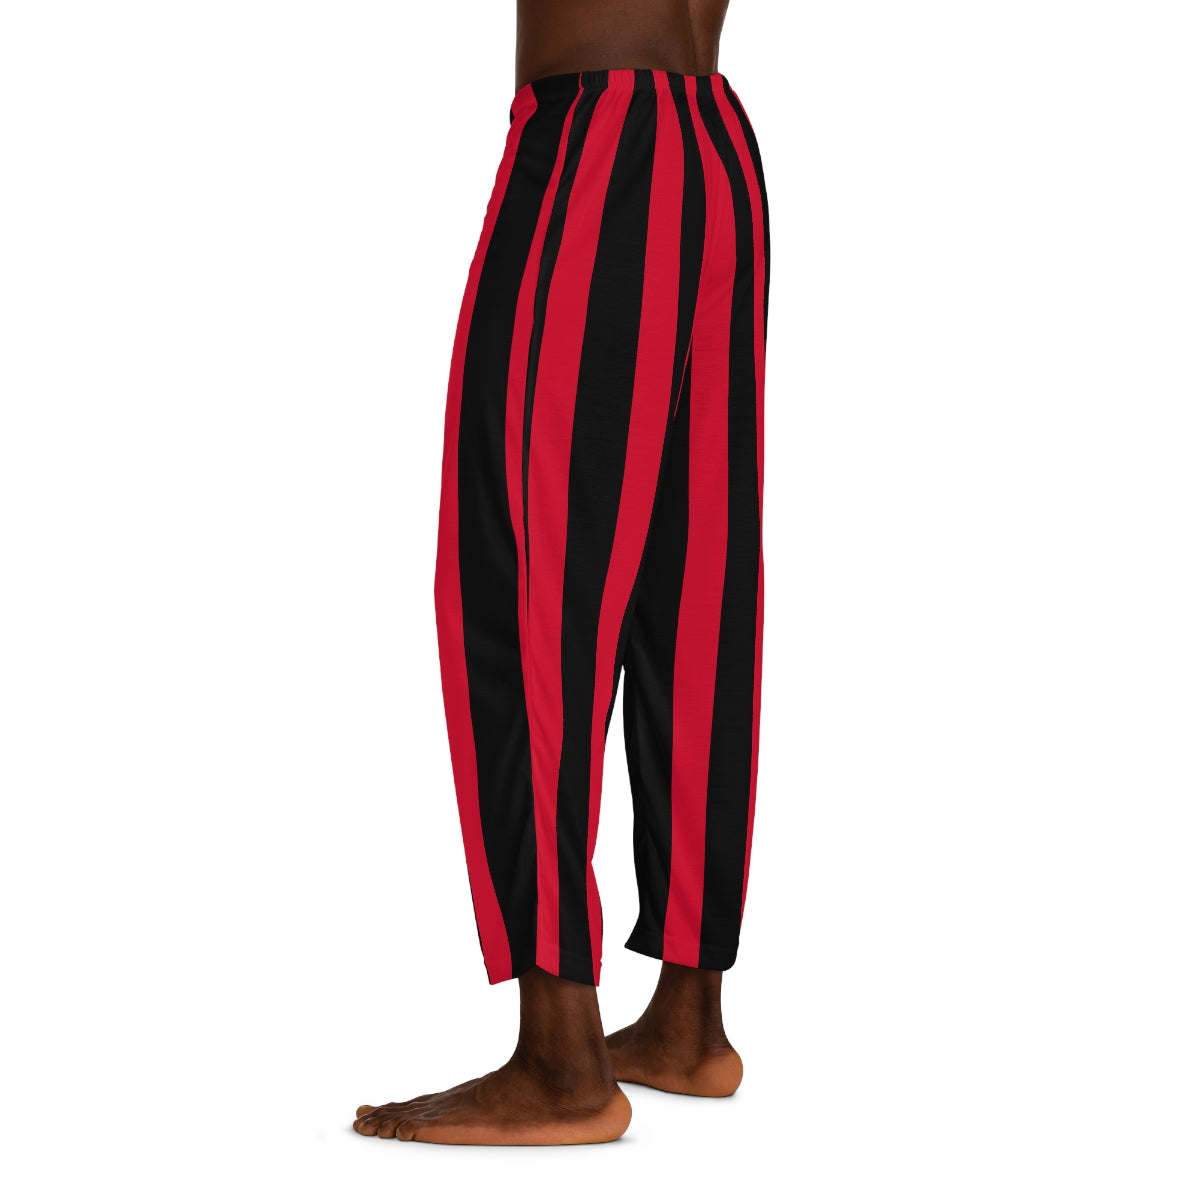 Harem Pants - Striped - Red & Black